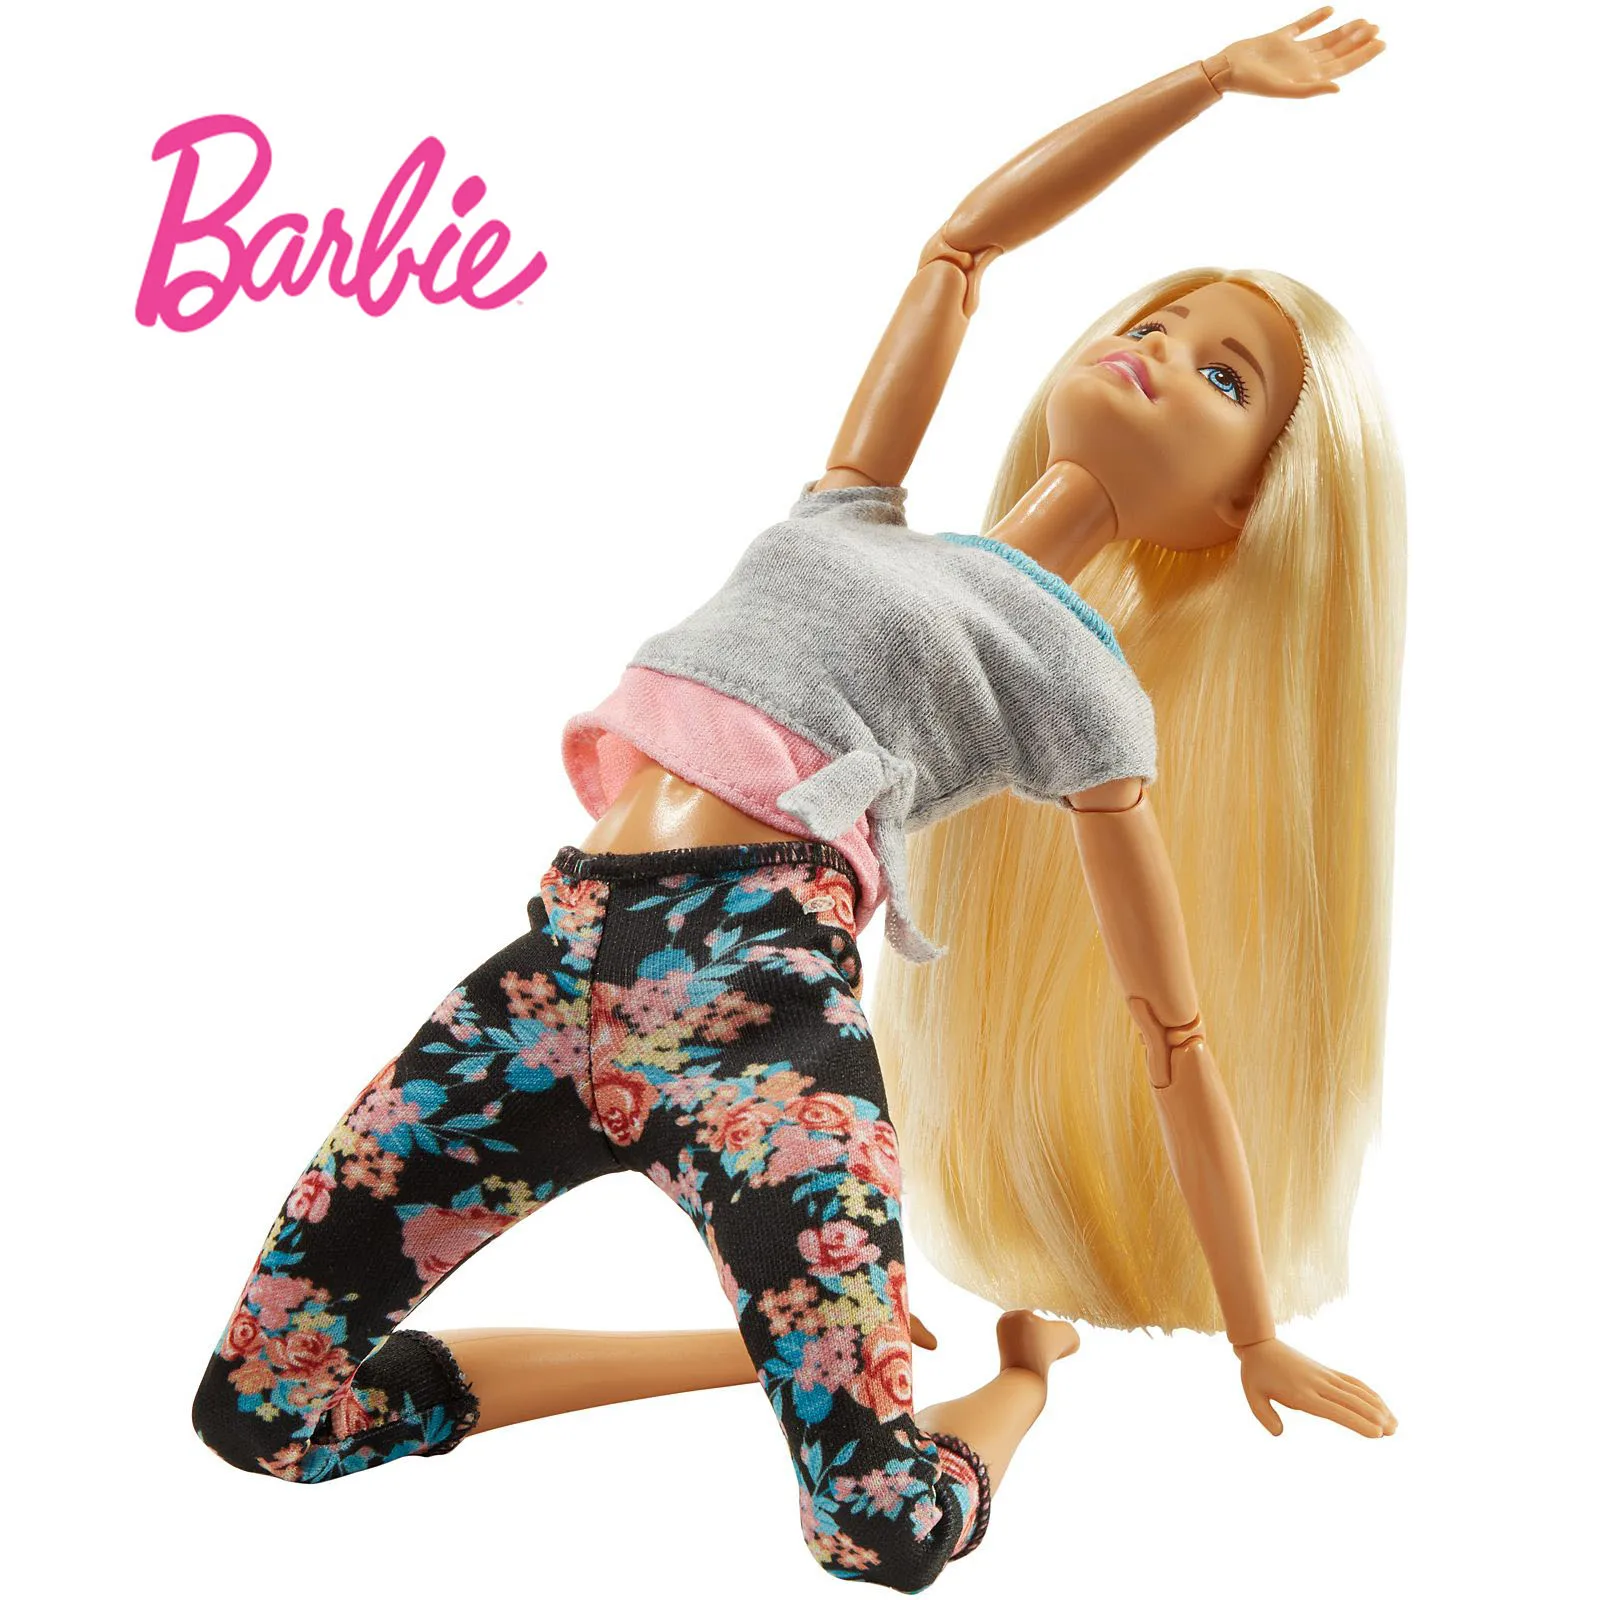 Barbie Original de la Gimnasia Yoga Deportes Muñeca Barbie Todas las Articulaciones se Mueven, Muñeca de Juguete Educativo Chica de Navidad, Cumpleaños Juguetes de Regalo DHL81 4